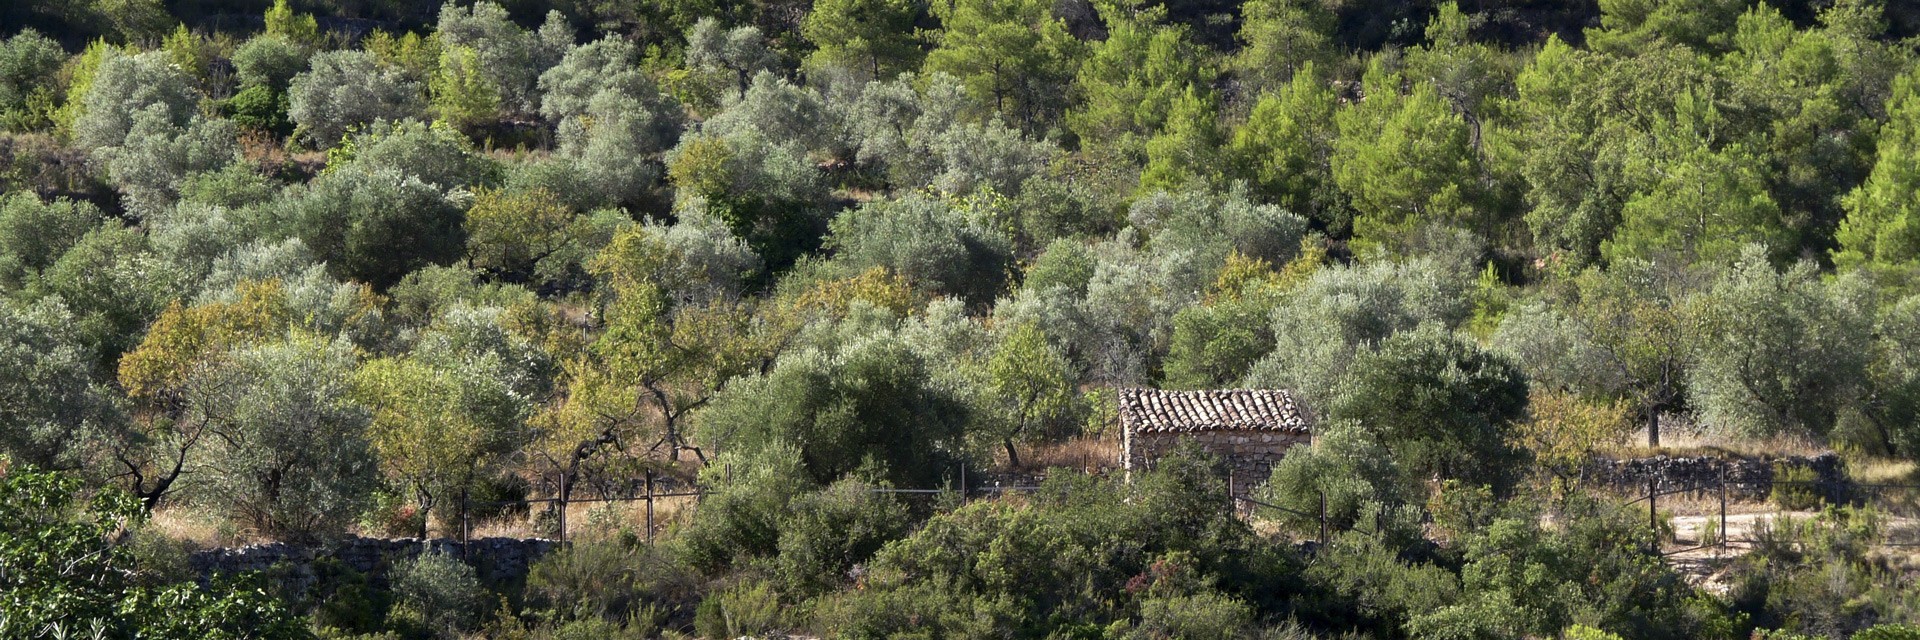  Olivar de montaña y biodiversidad en Les Garrigues (Lleida)